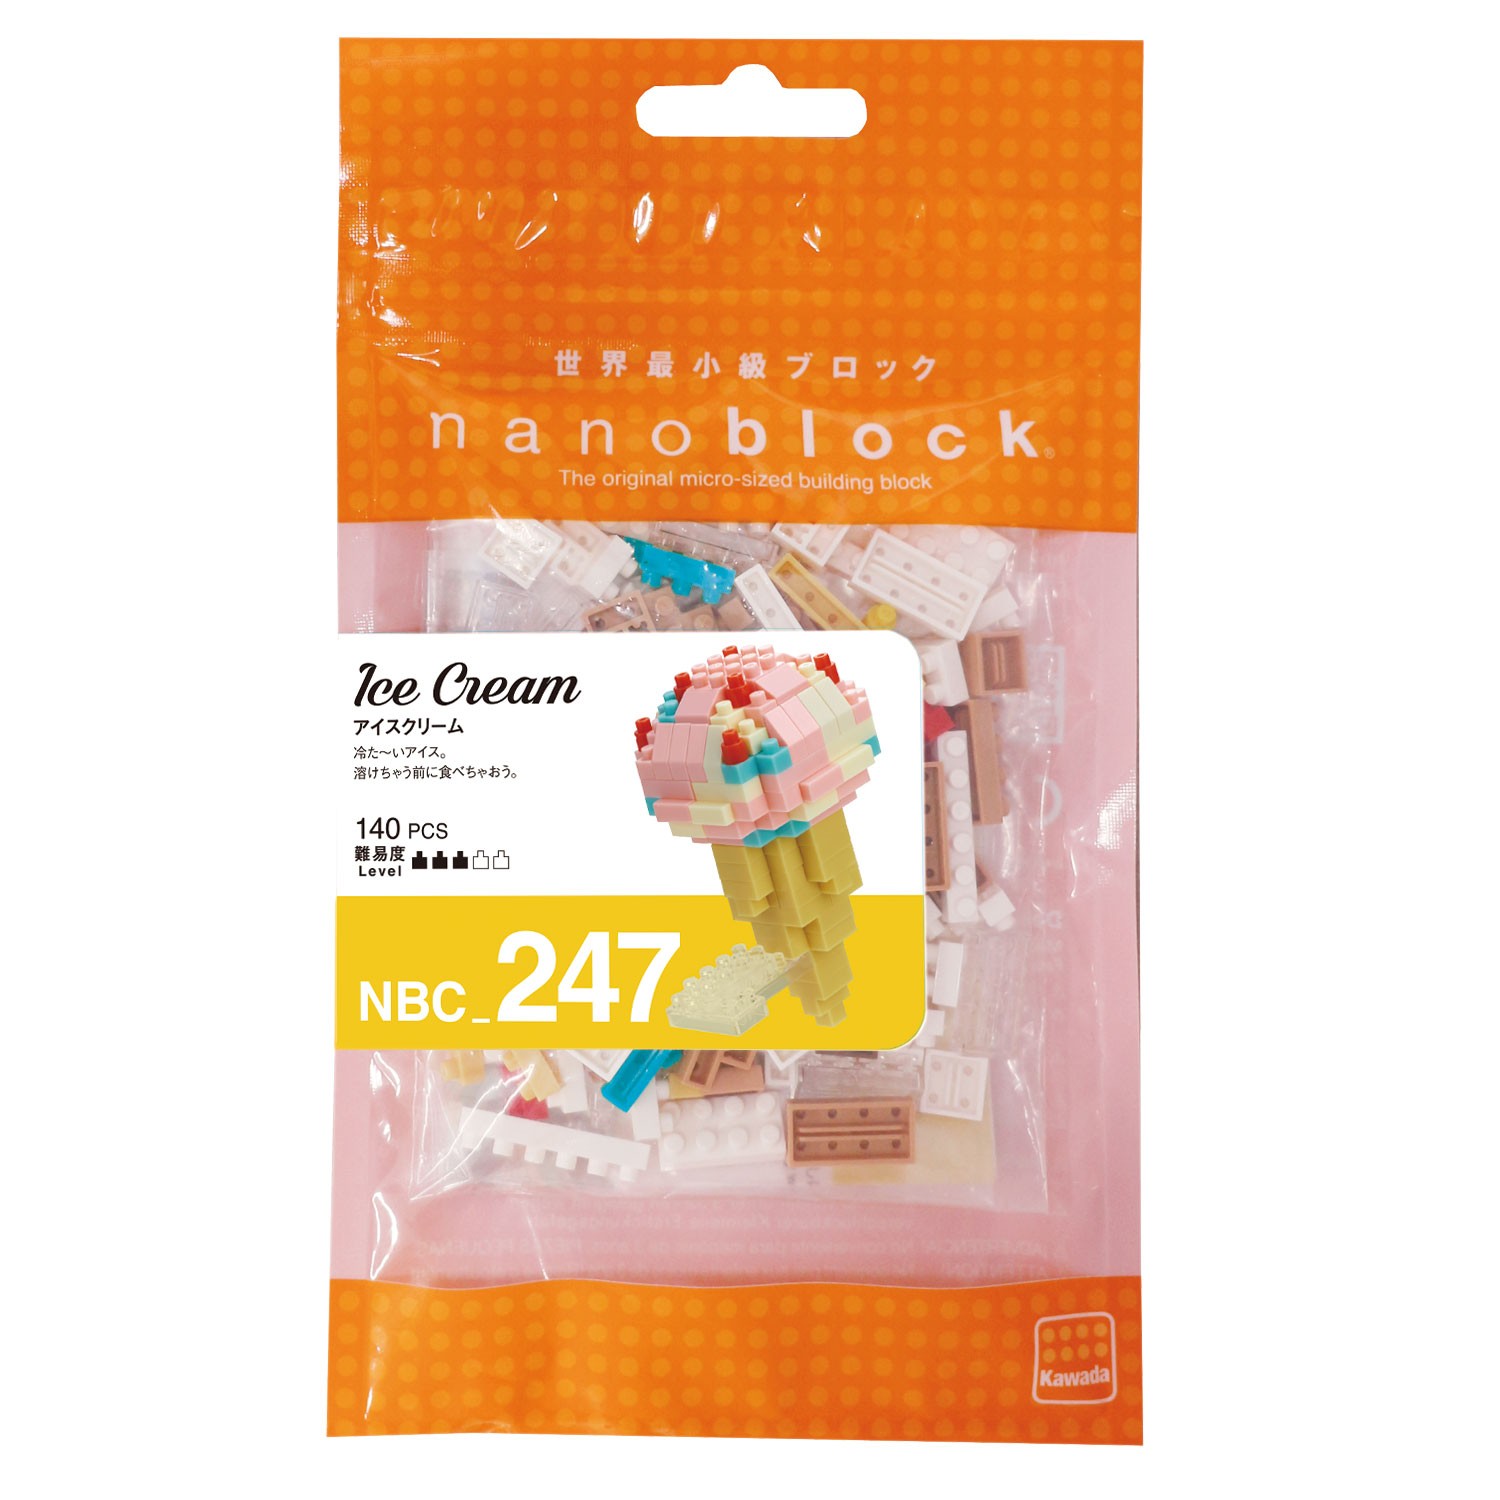 Nanoblock Mini Collection NBC-247 Ice Cream 